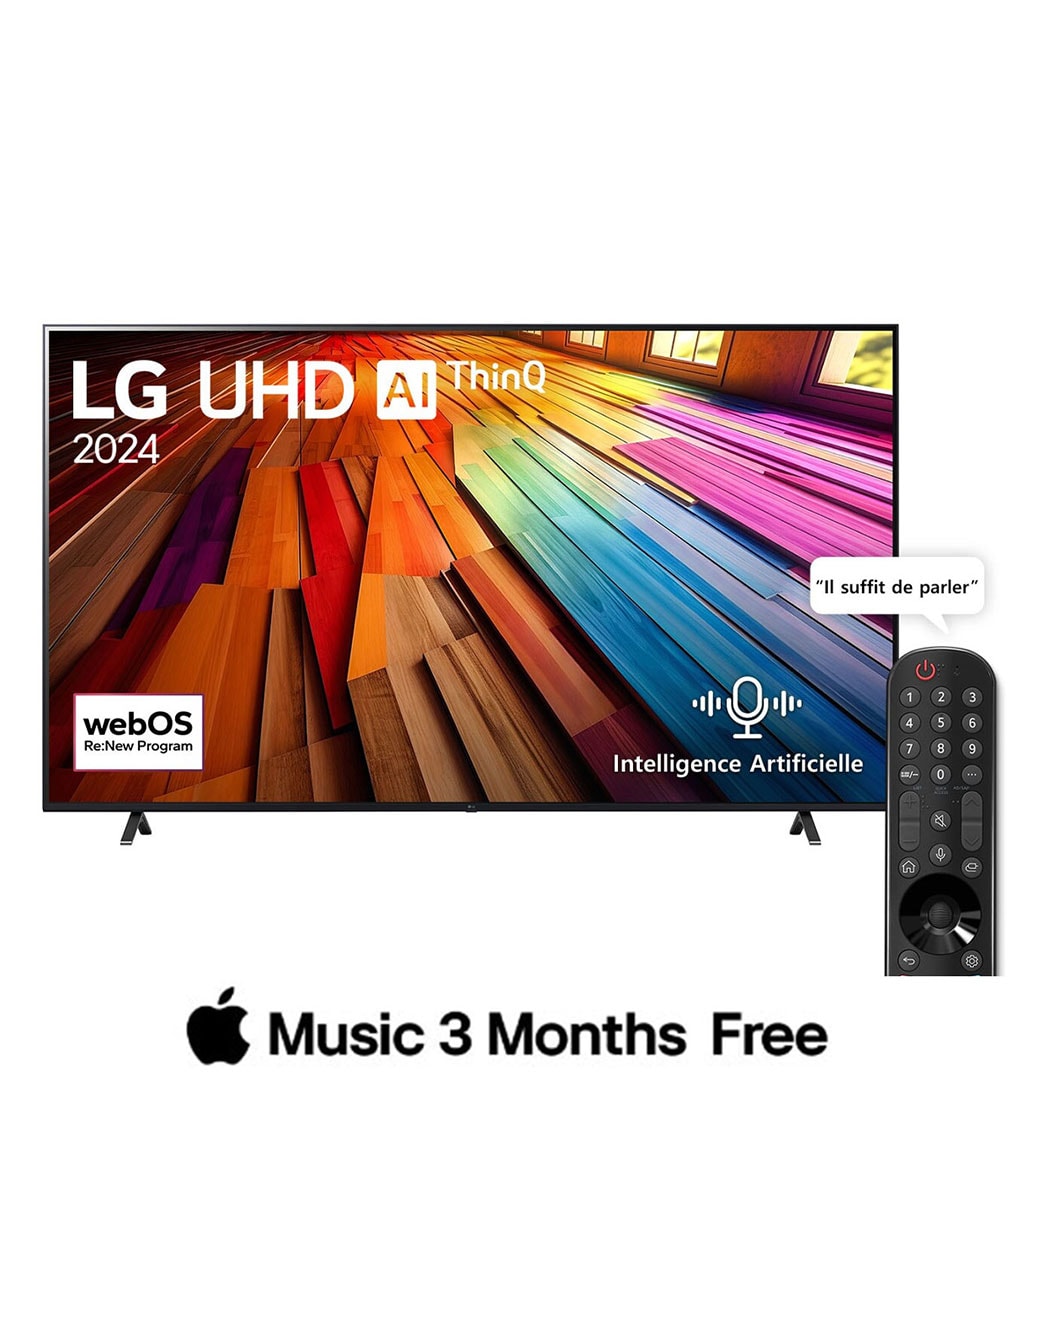 LG Smart TV  LG UHD UT80 4K, 65 pouces, Télécommande Magique IA HDR10 webOS24 2024, Vue de face du téléviseur LG UHD, UT80 avec le texte LG UHD AI ThinQ, 2024 et le logo webOS Re:New Program à l’écran., 65UT80006LA